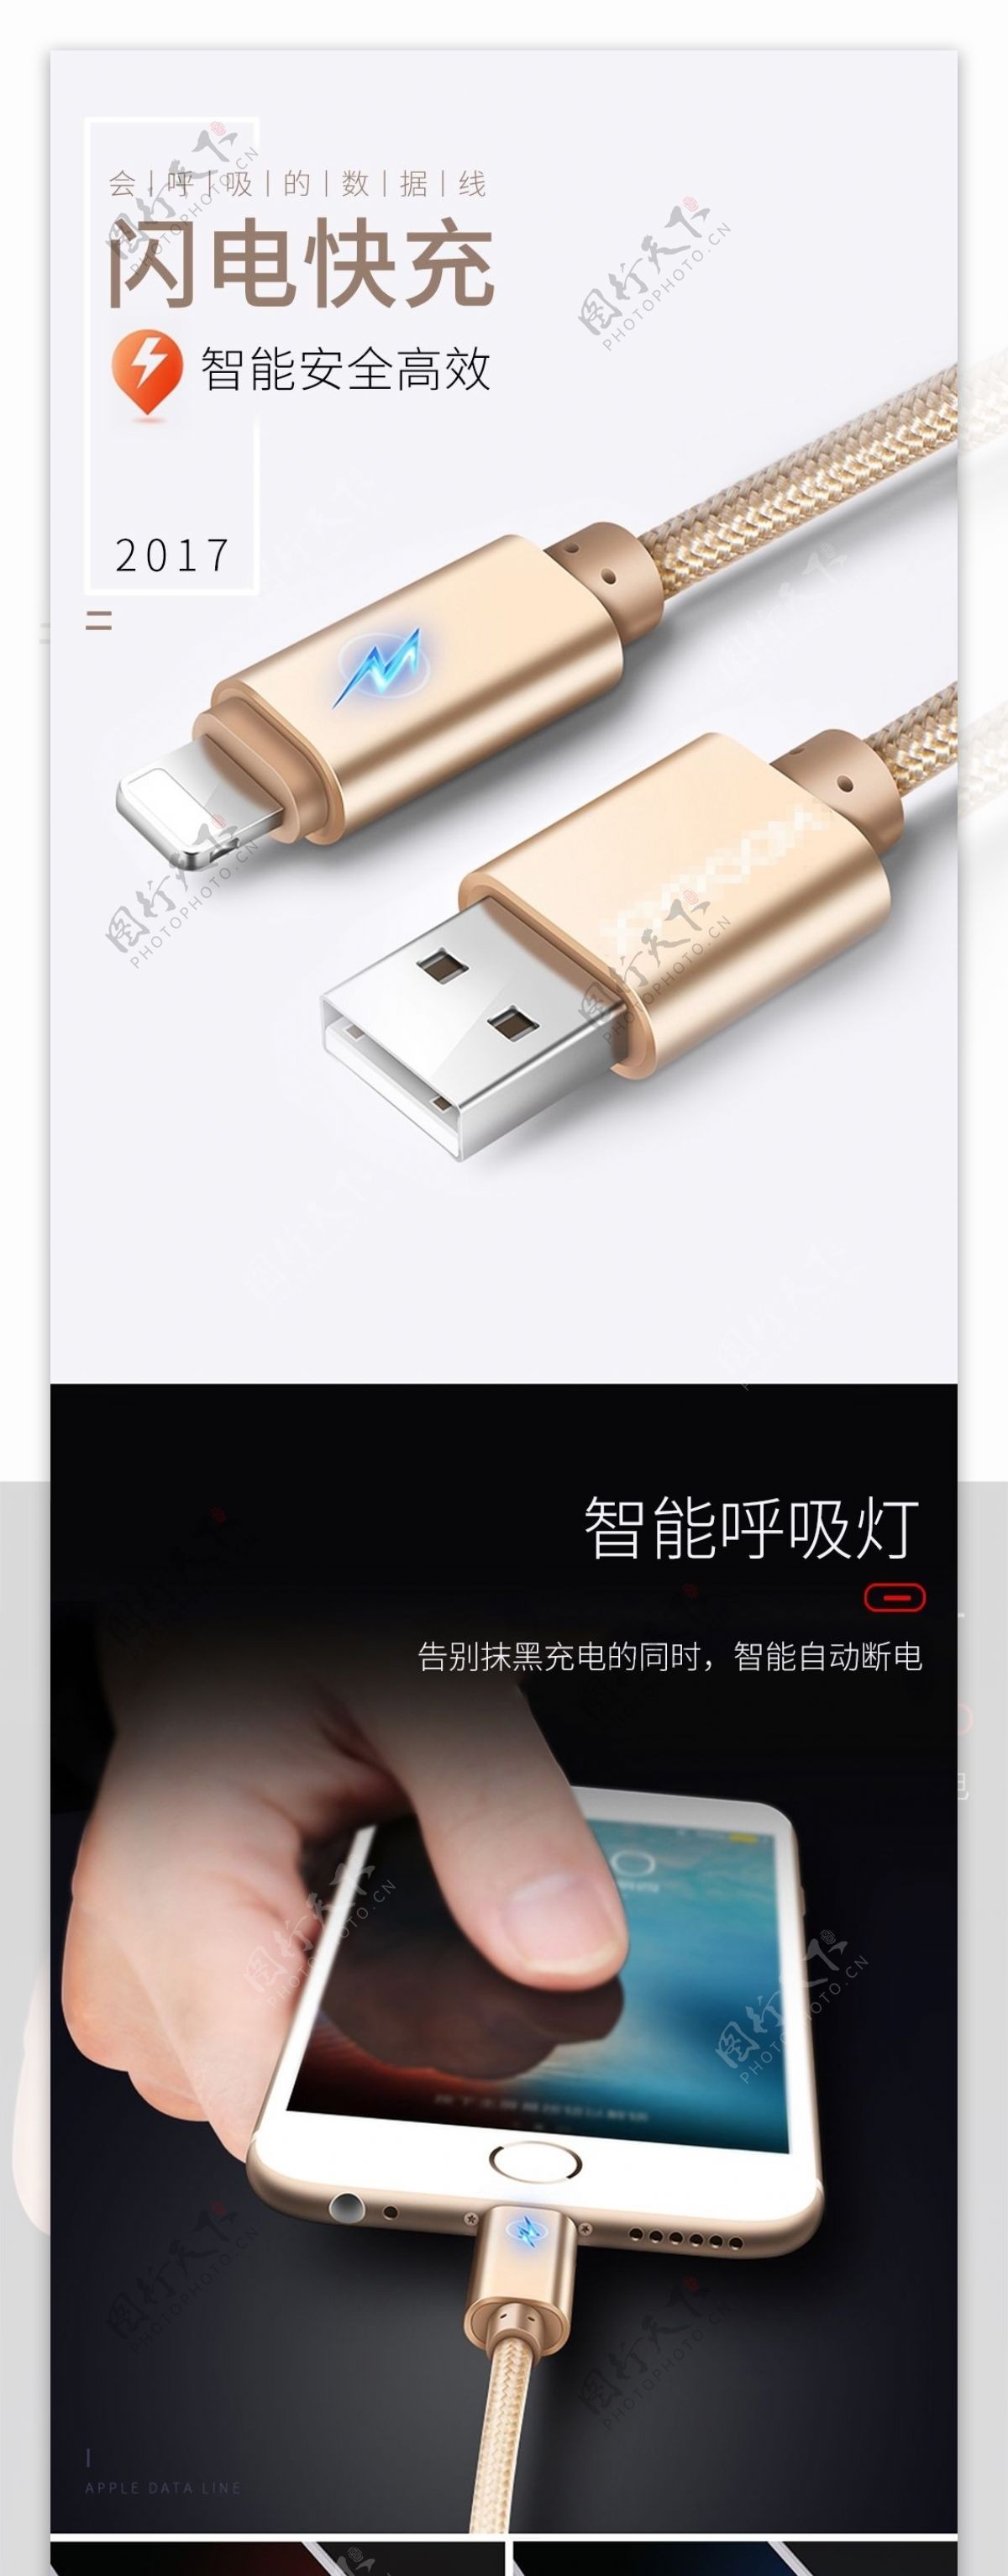 淘宝充电USB数据线详情页